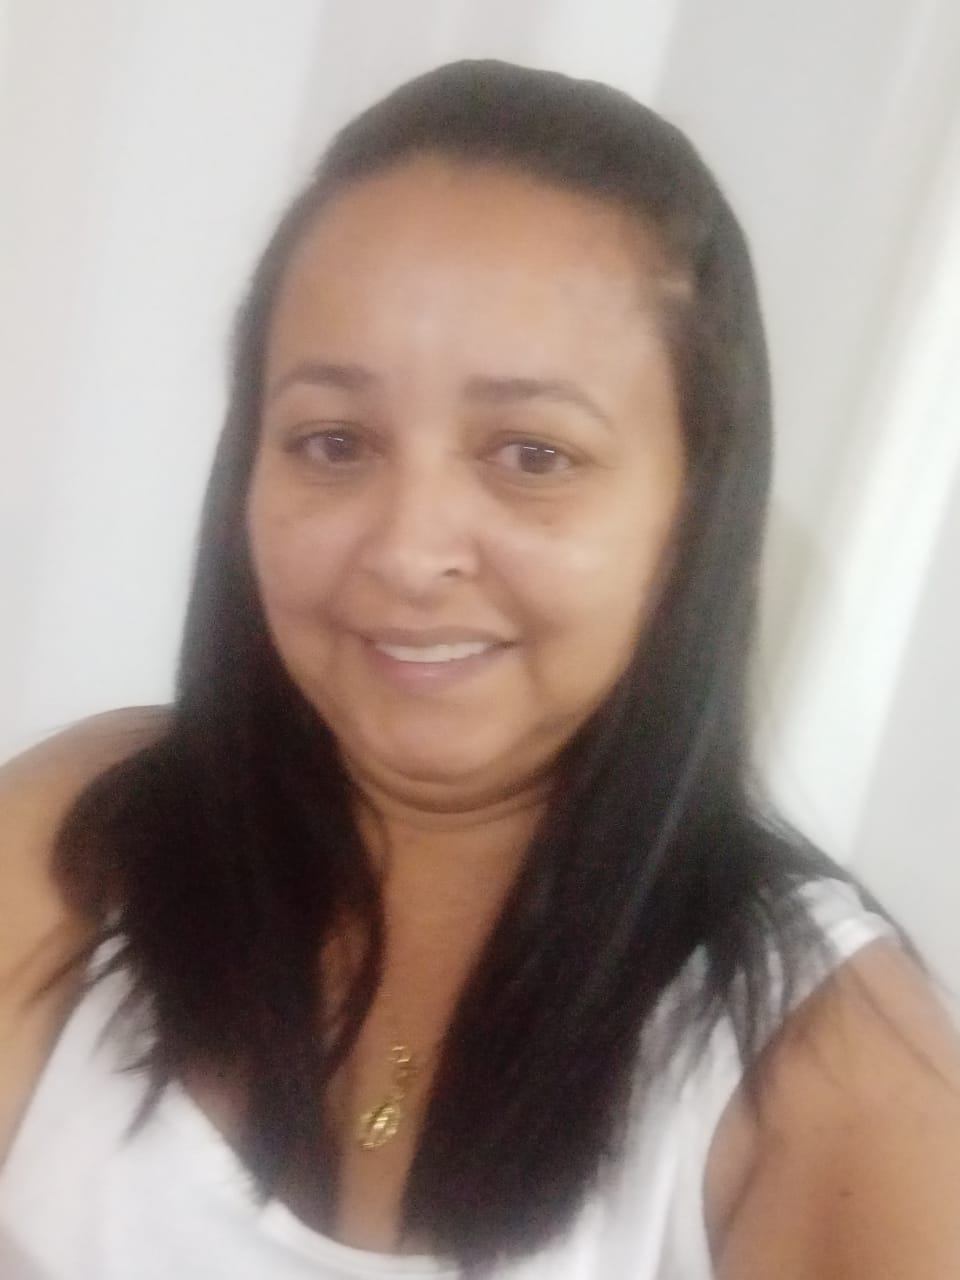 Moradora de São Bernardo do Campo ganha sozinha 160 mil reais e vai realizar o sonho da casa própria.